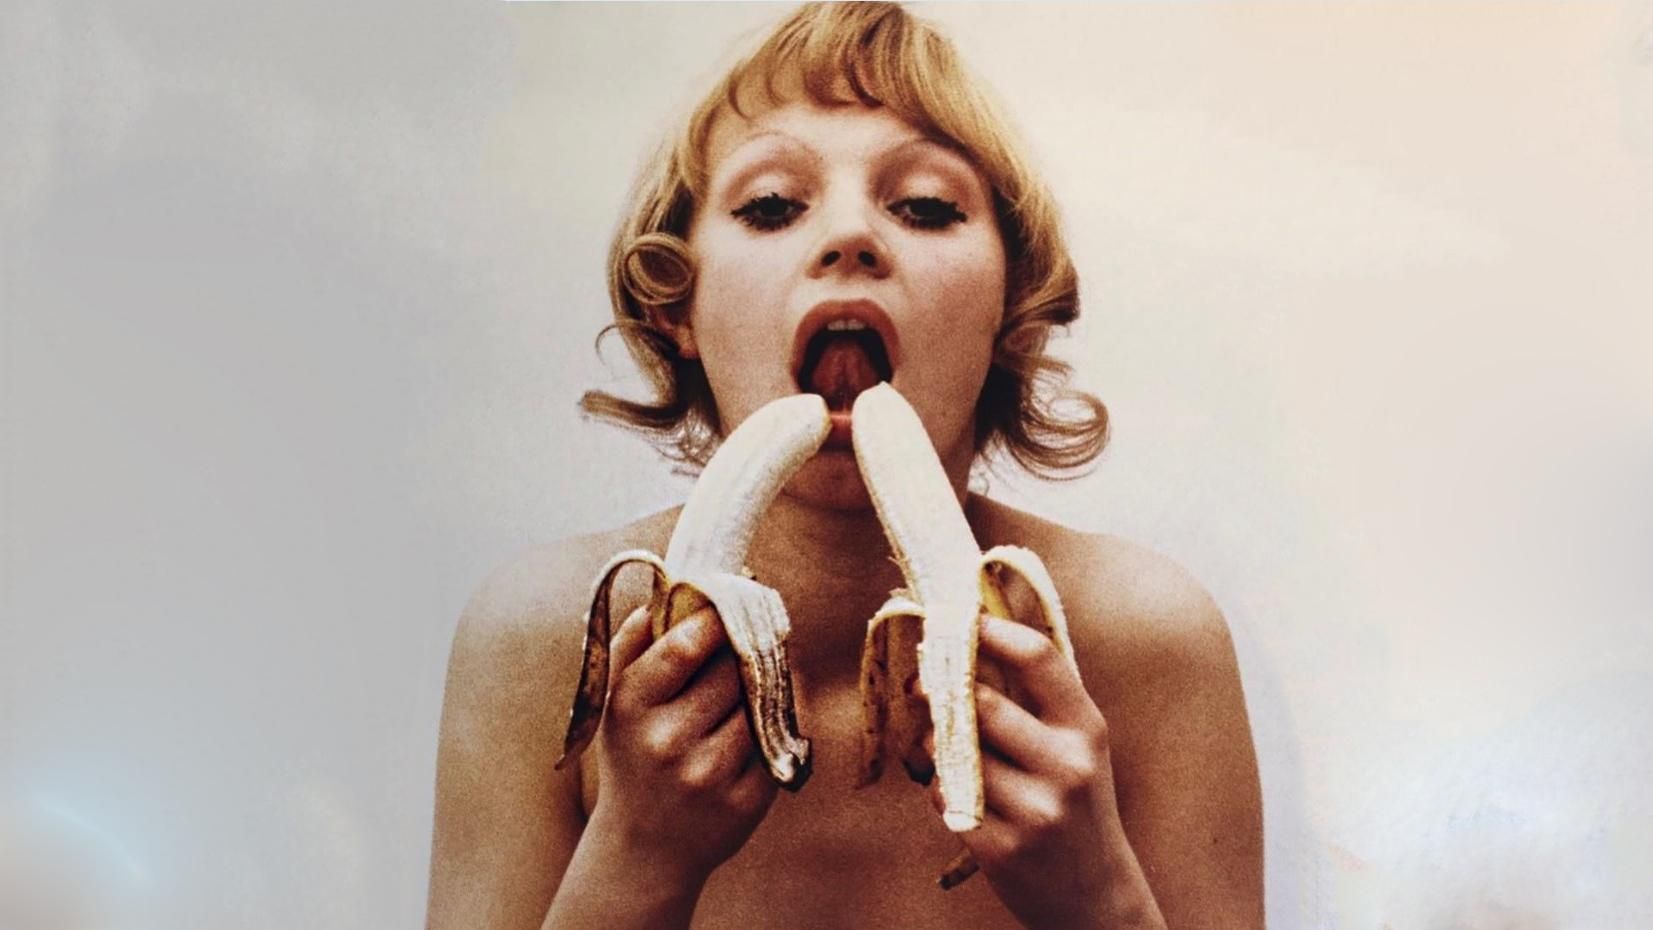 Все едим бананы: в соцсетях запустили провокационный флешмоб против цензуры в искусстве